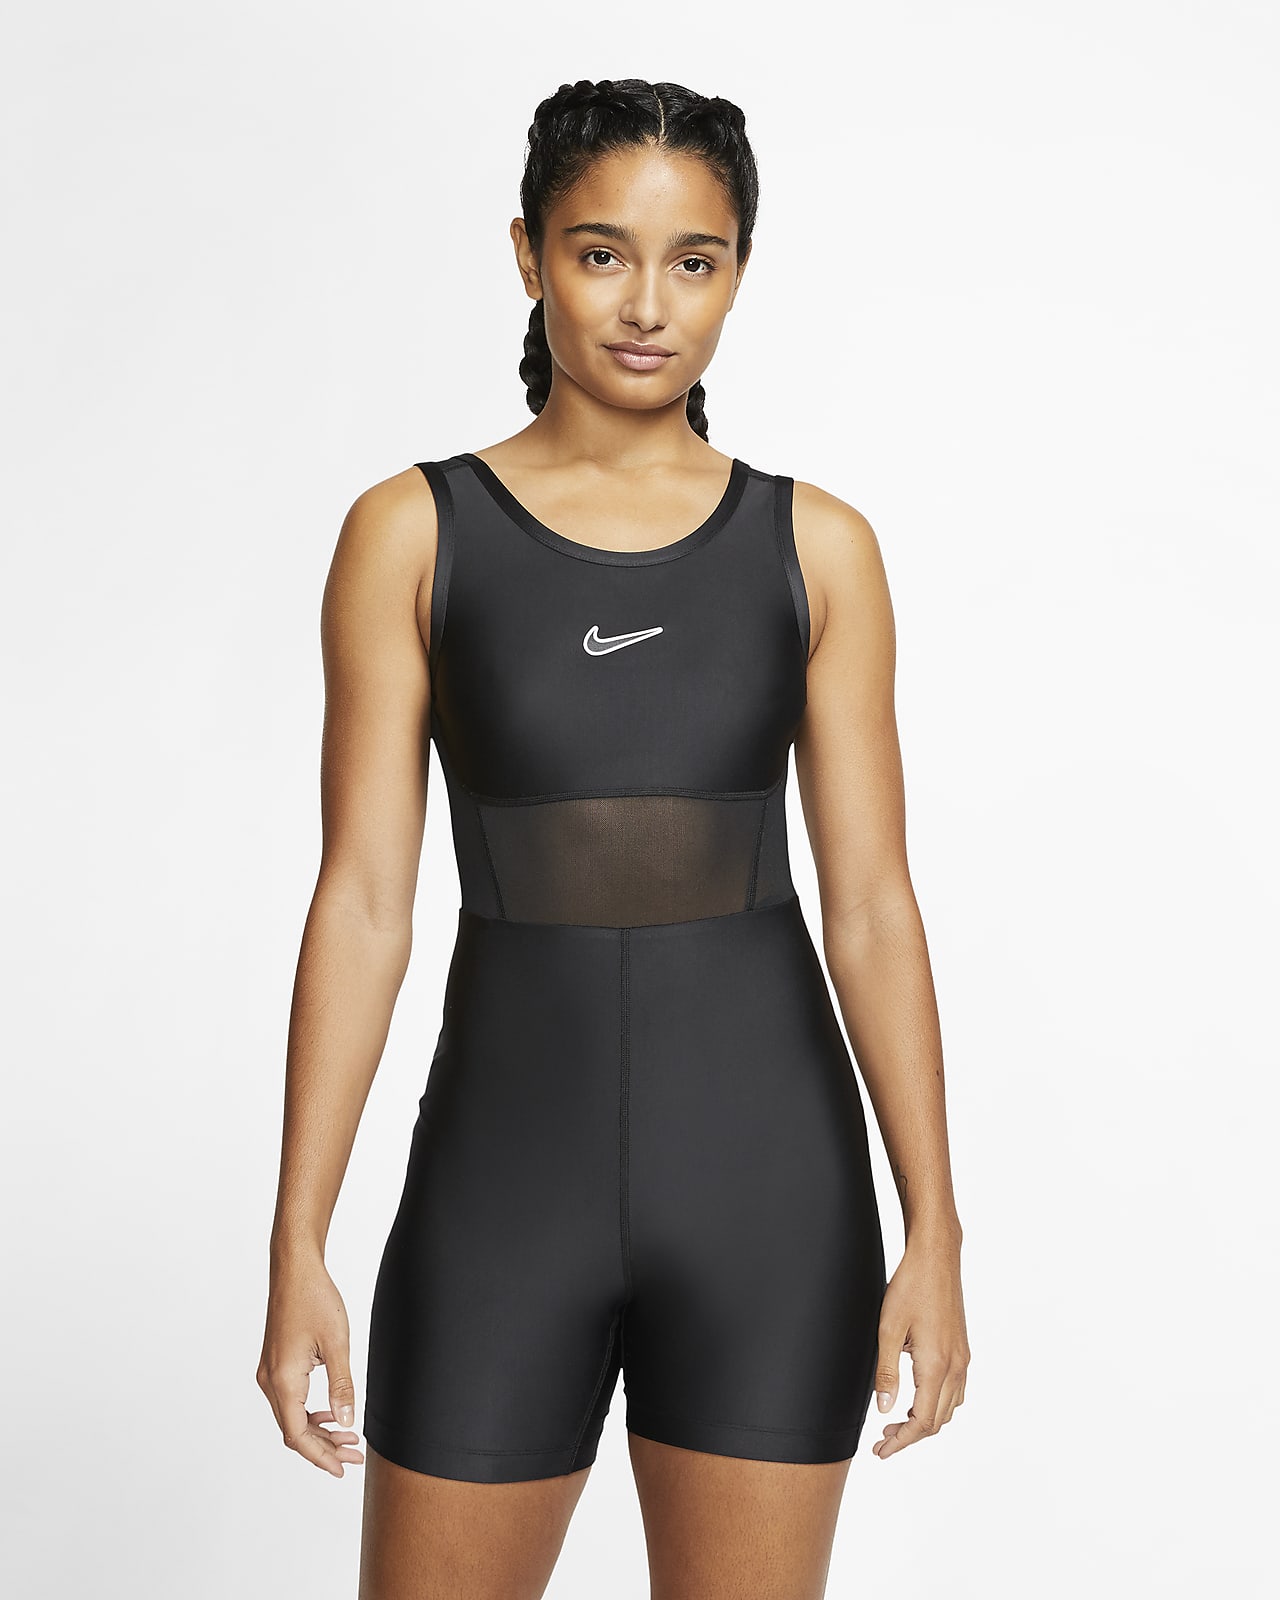 New Women's Bodysuits. Nike MY